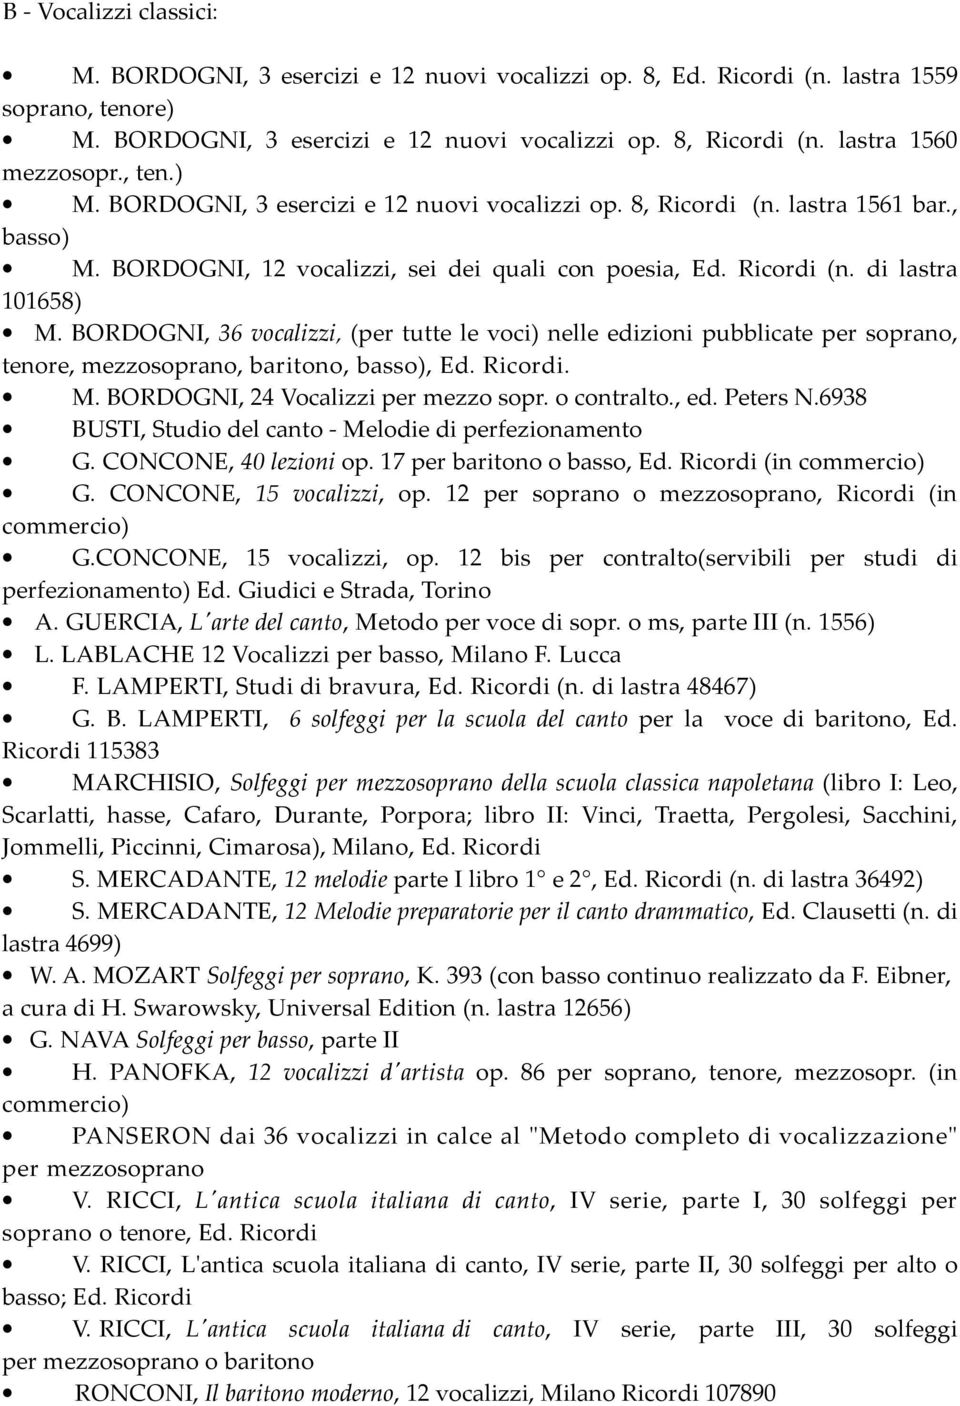 BORDOGNI, 36 vocalizzi, (per tutte le voci) nelle edizioni pubblicate per soprano, tenore, mezzosoprano, baritono, basso), Ed. Ricordi. M. BORDOGNI, 24 Vocalizzi per mezzo sopr. o contralto., ed.